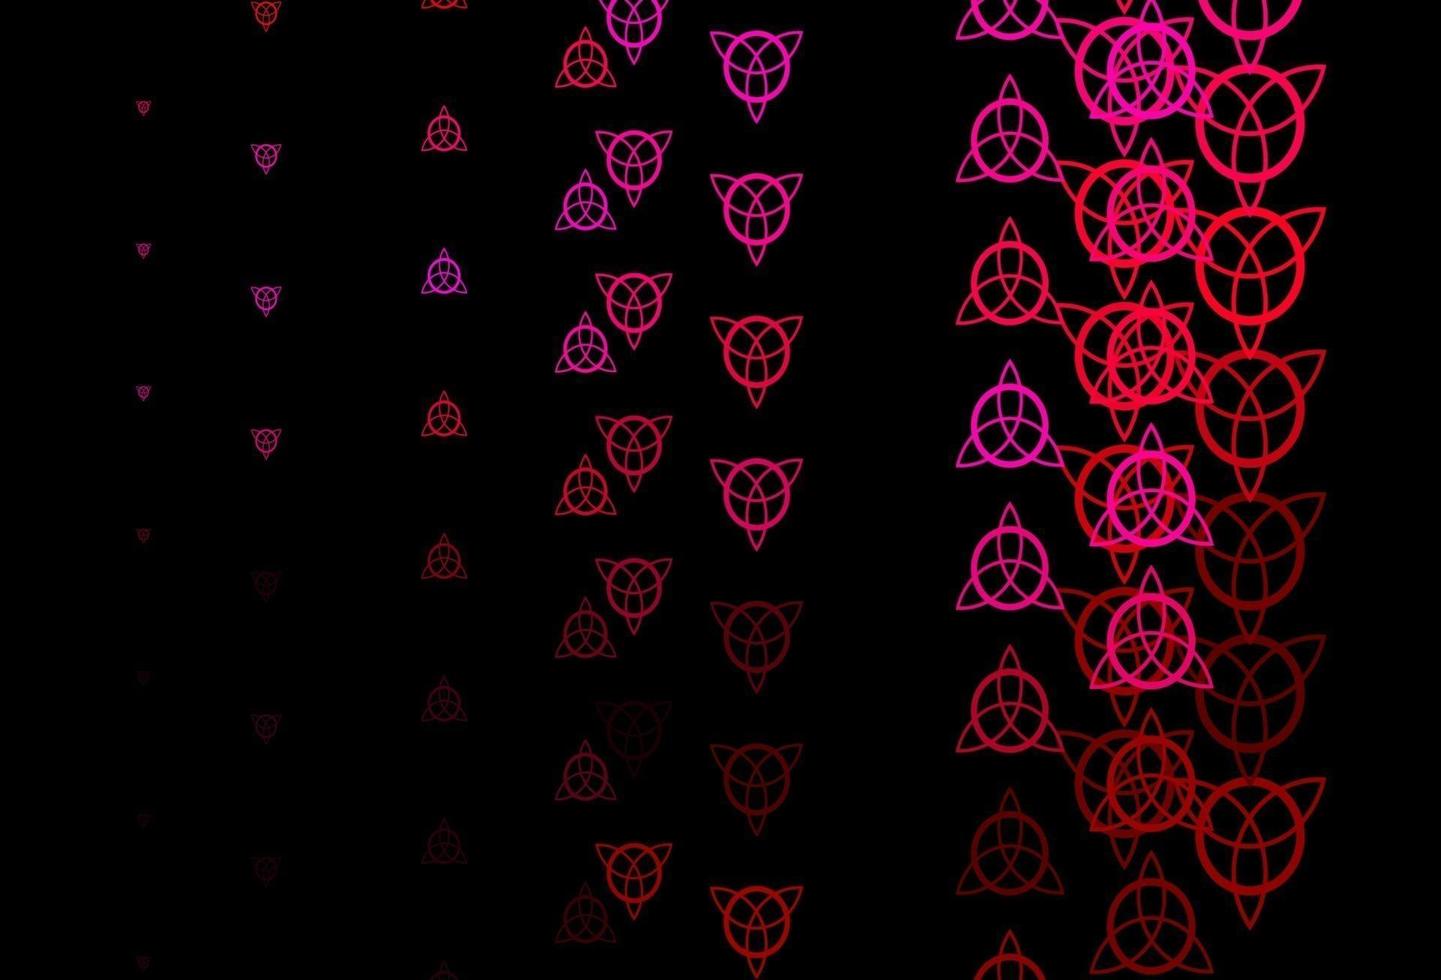 fond de vecteur rose foncé avec des symboles occultes.